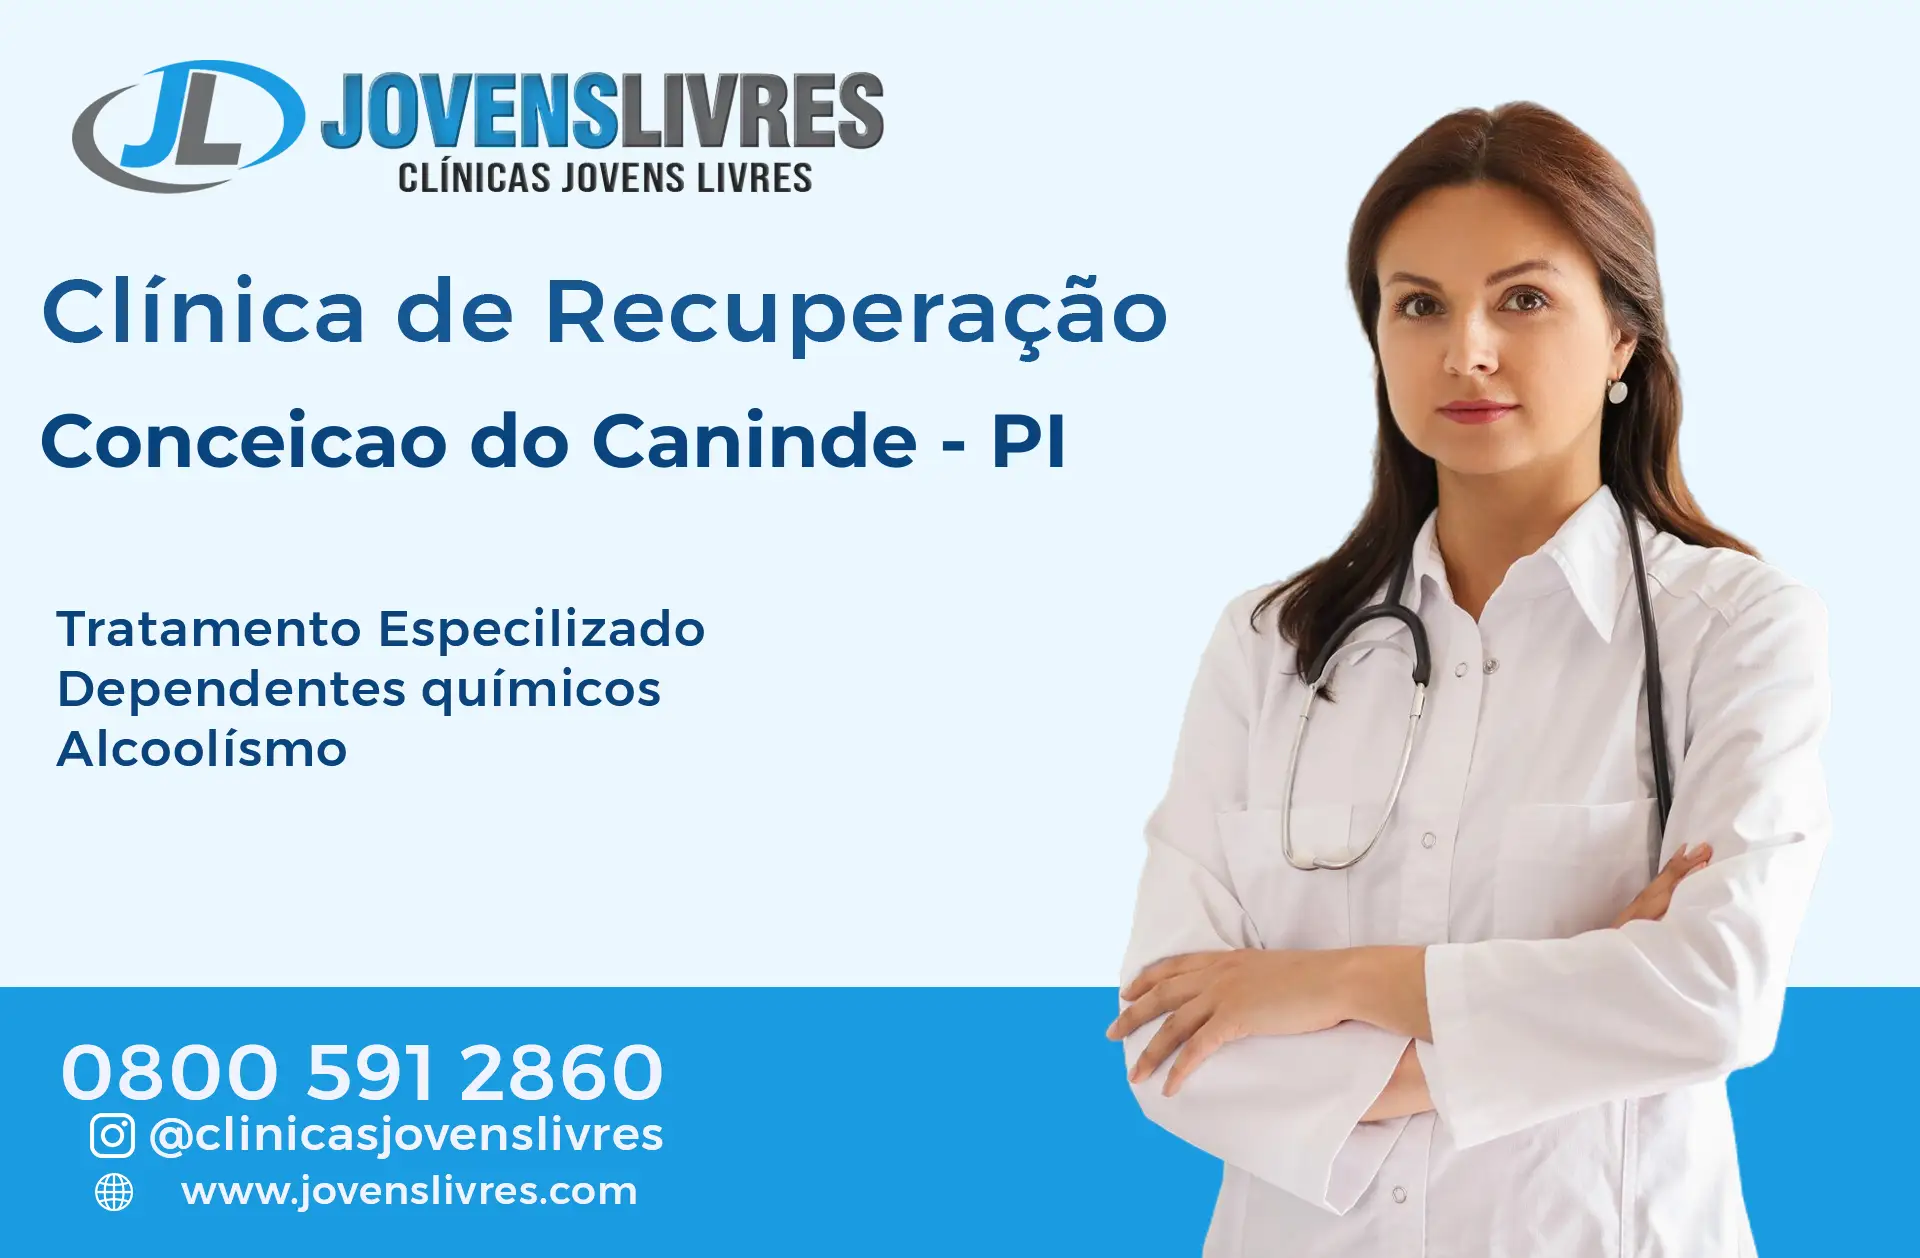 Clínica de Recuperação em Conceição do Canindé - PI